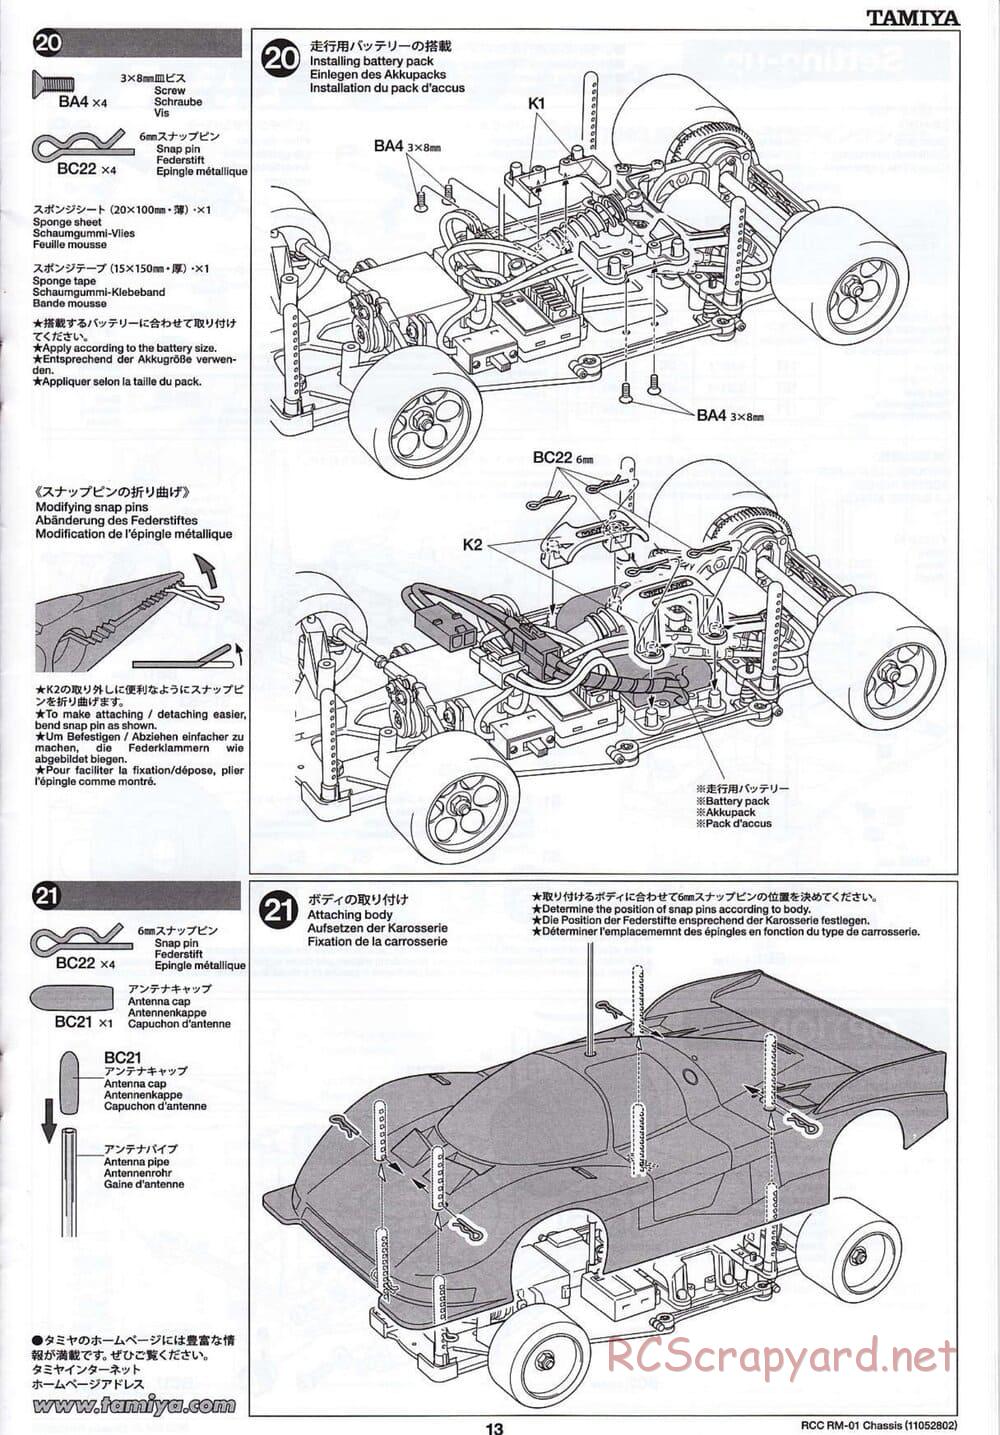 Tamiya - TA04-SS Chassis - Manual - Page 13